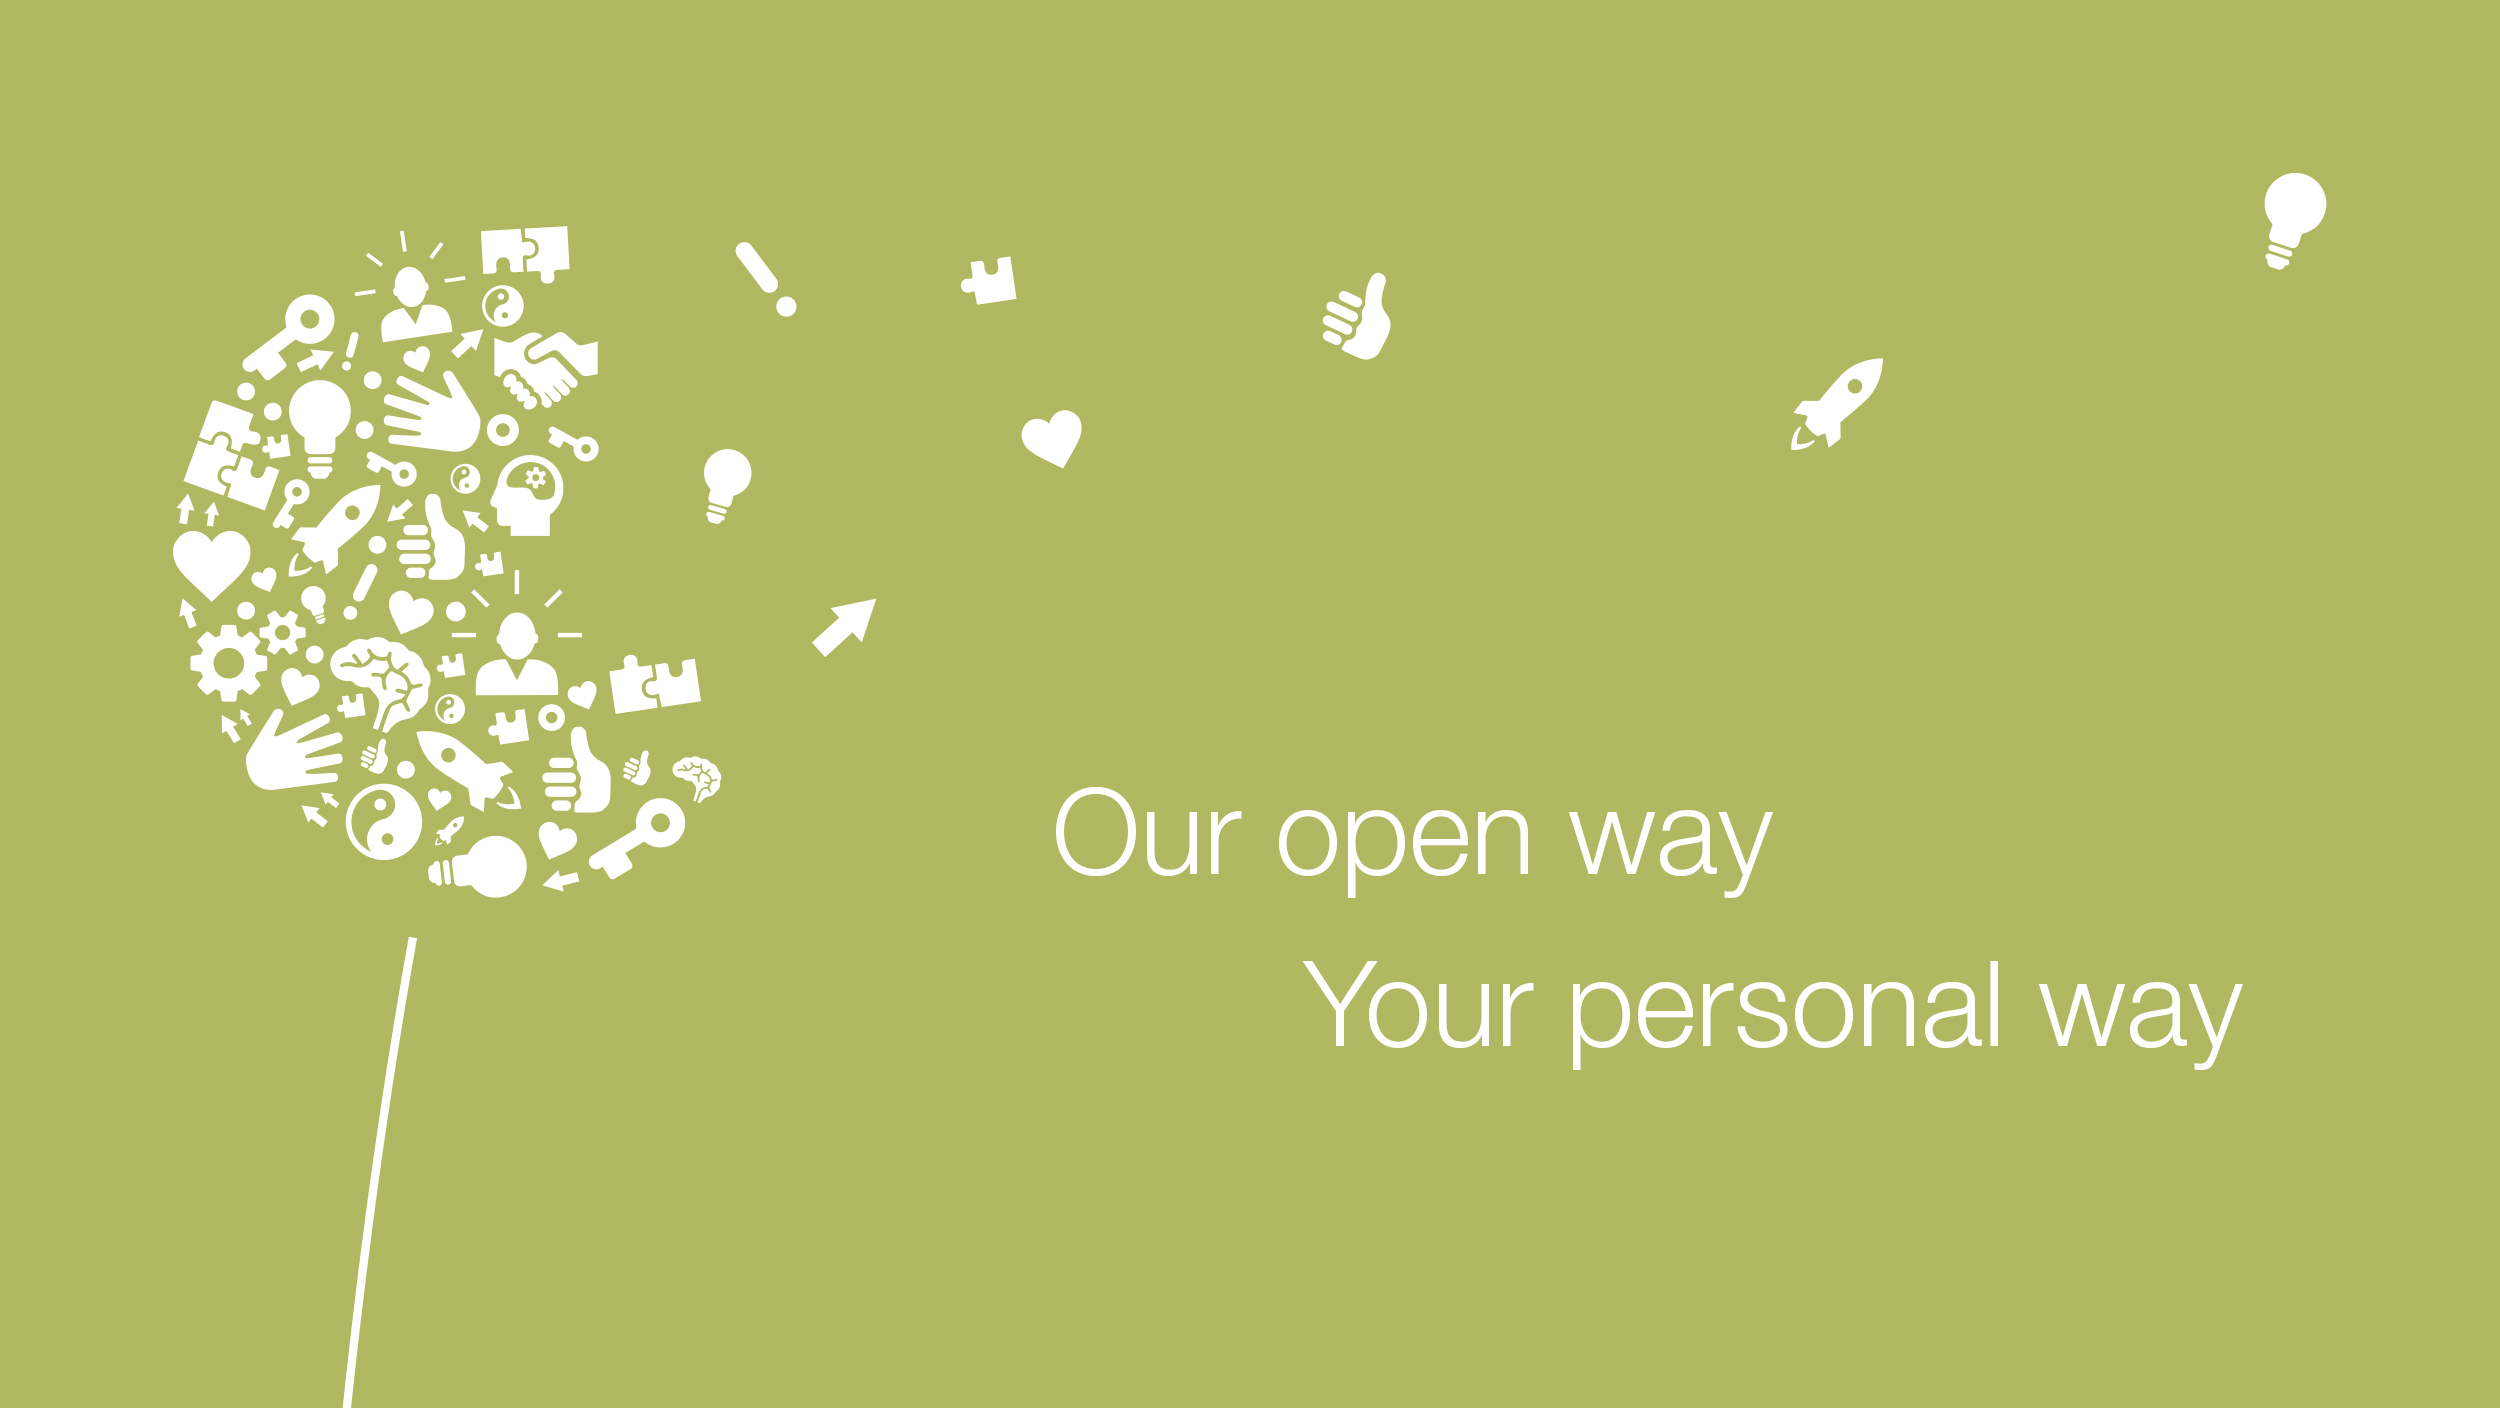 Pitypang különböző ikonokból, a következő szlogen mellett: Nyitott ajtóink az Ön számára perspektívát jelentenek